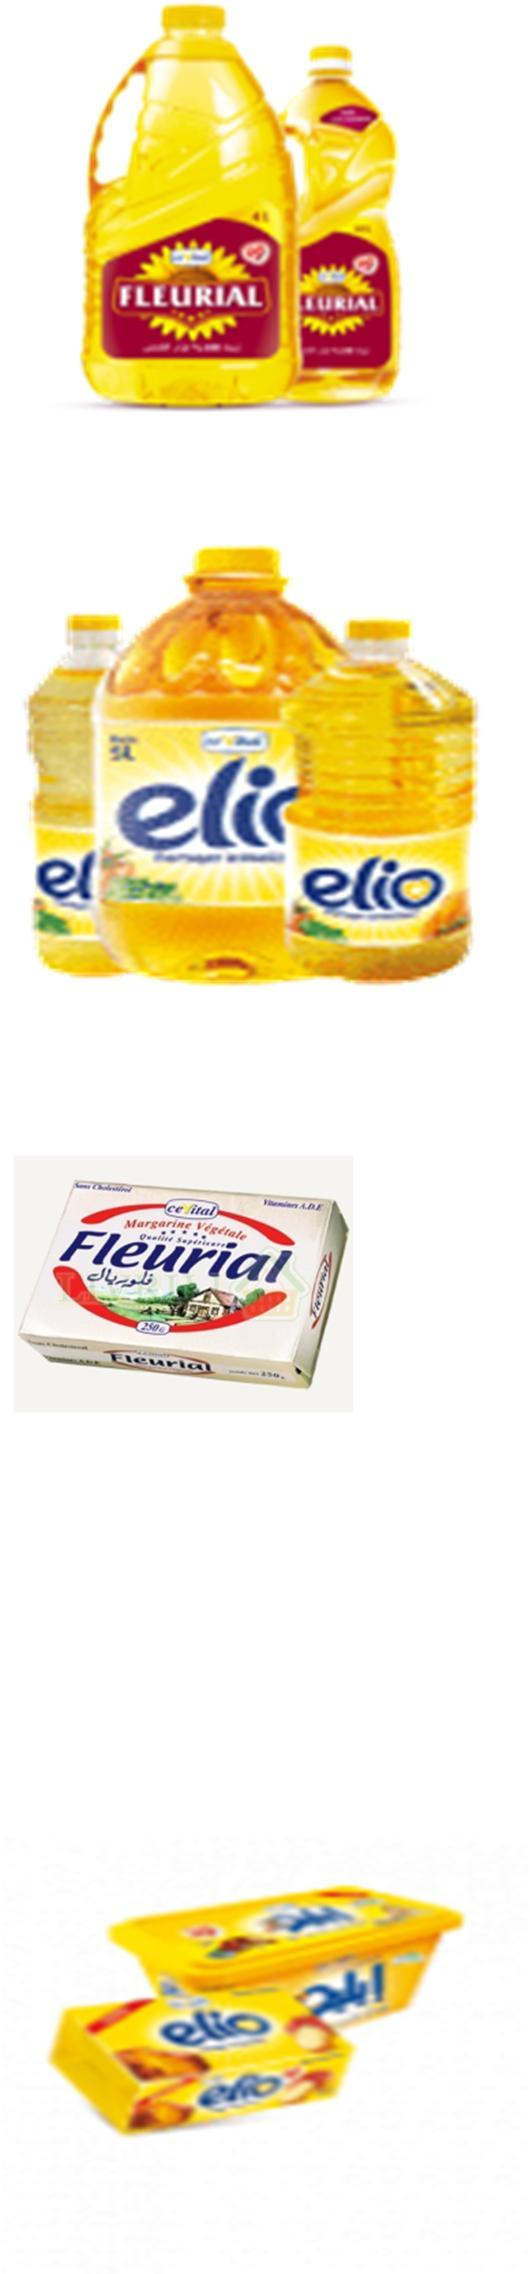 Cevital Fleurial 100% huile de Colza sans cholestérol 1.8L